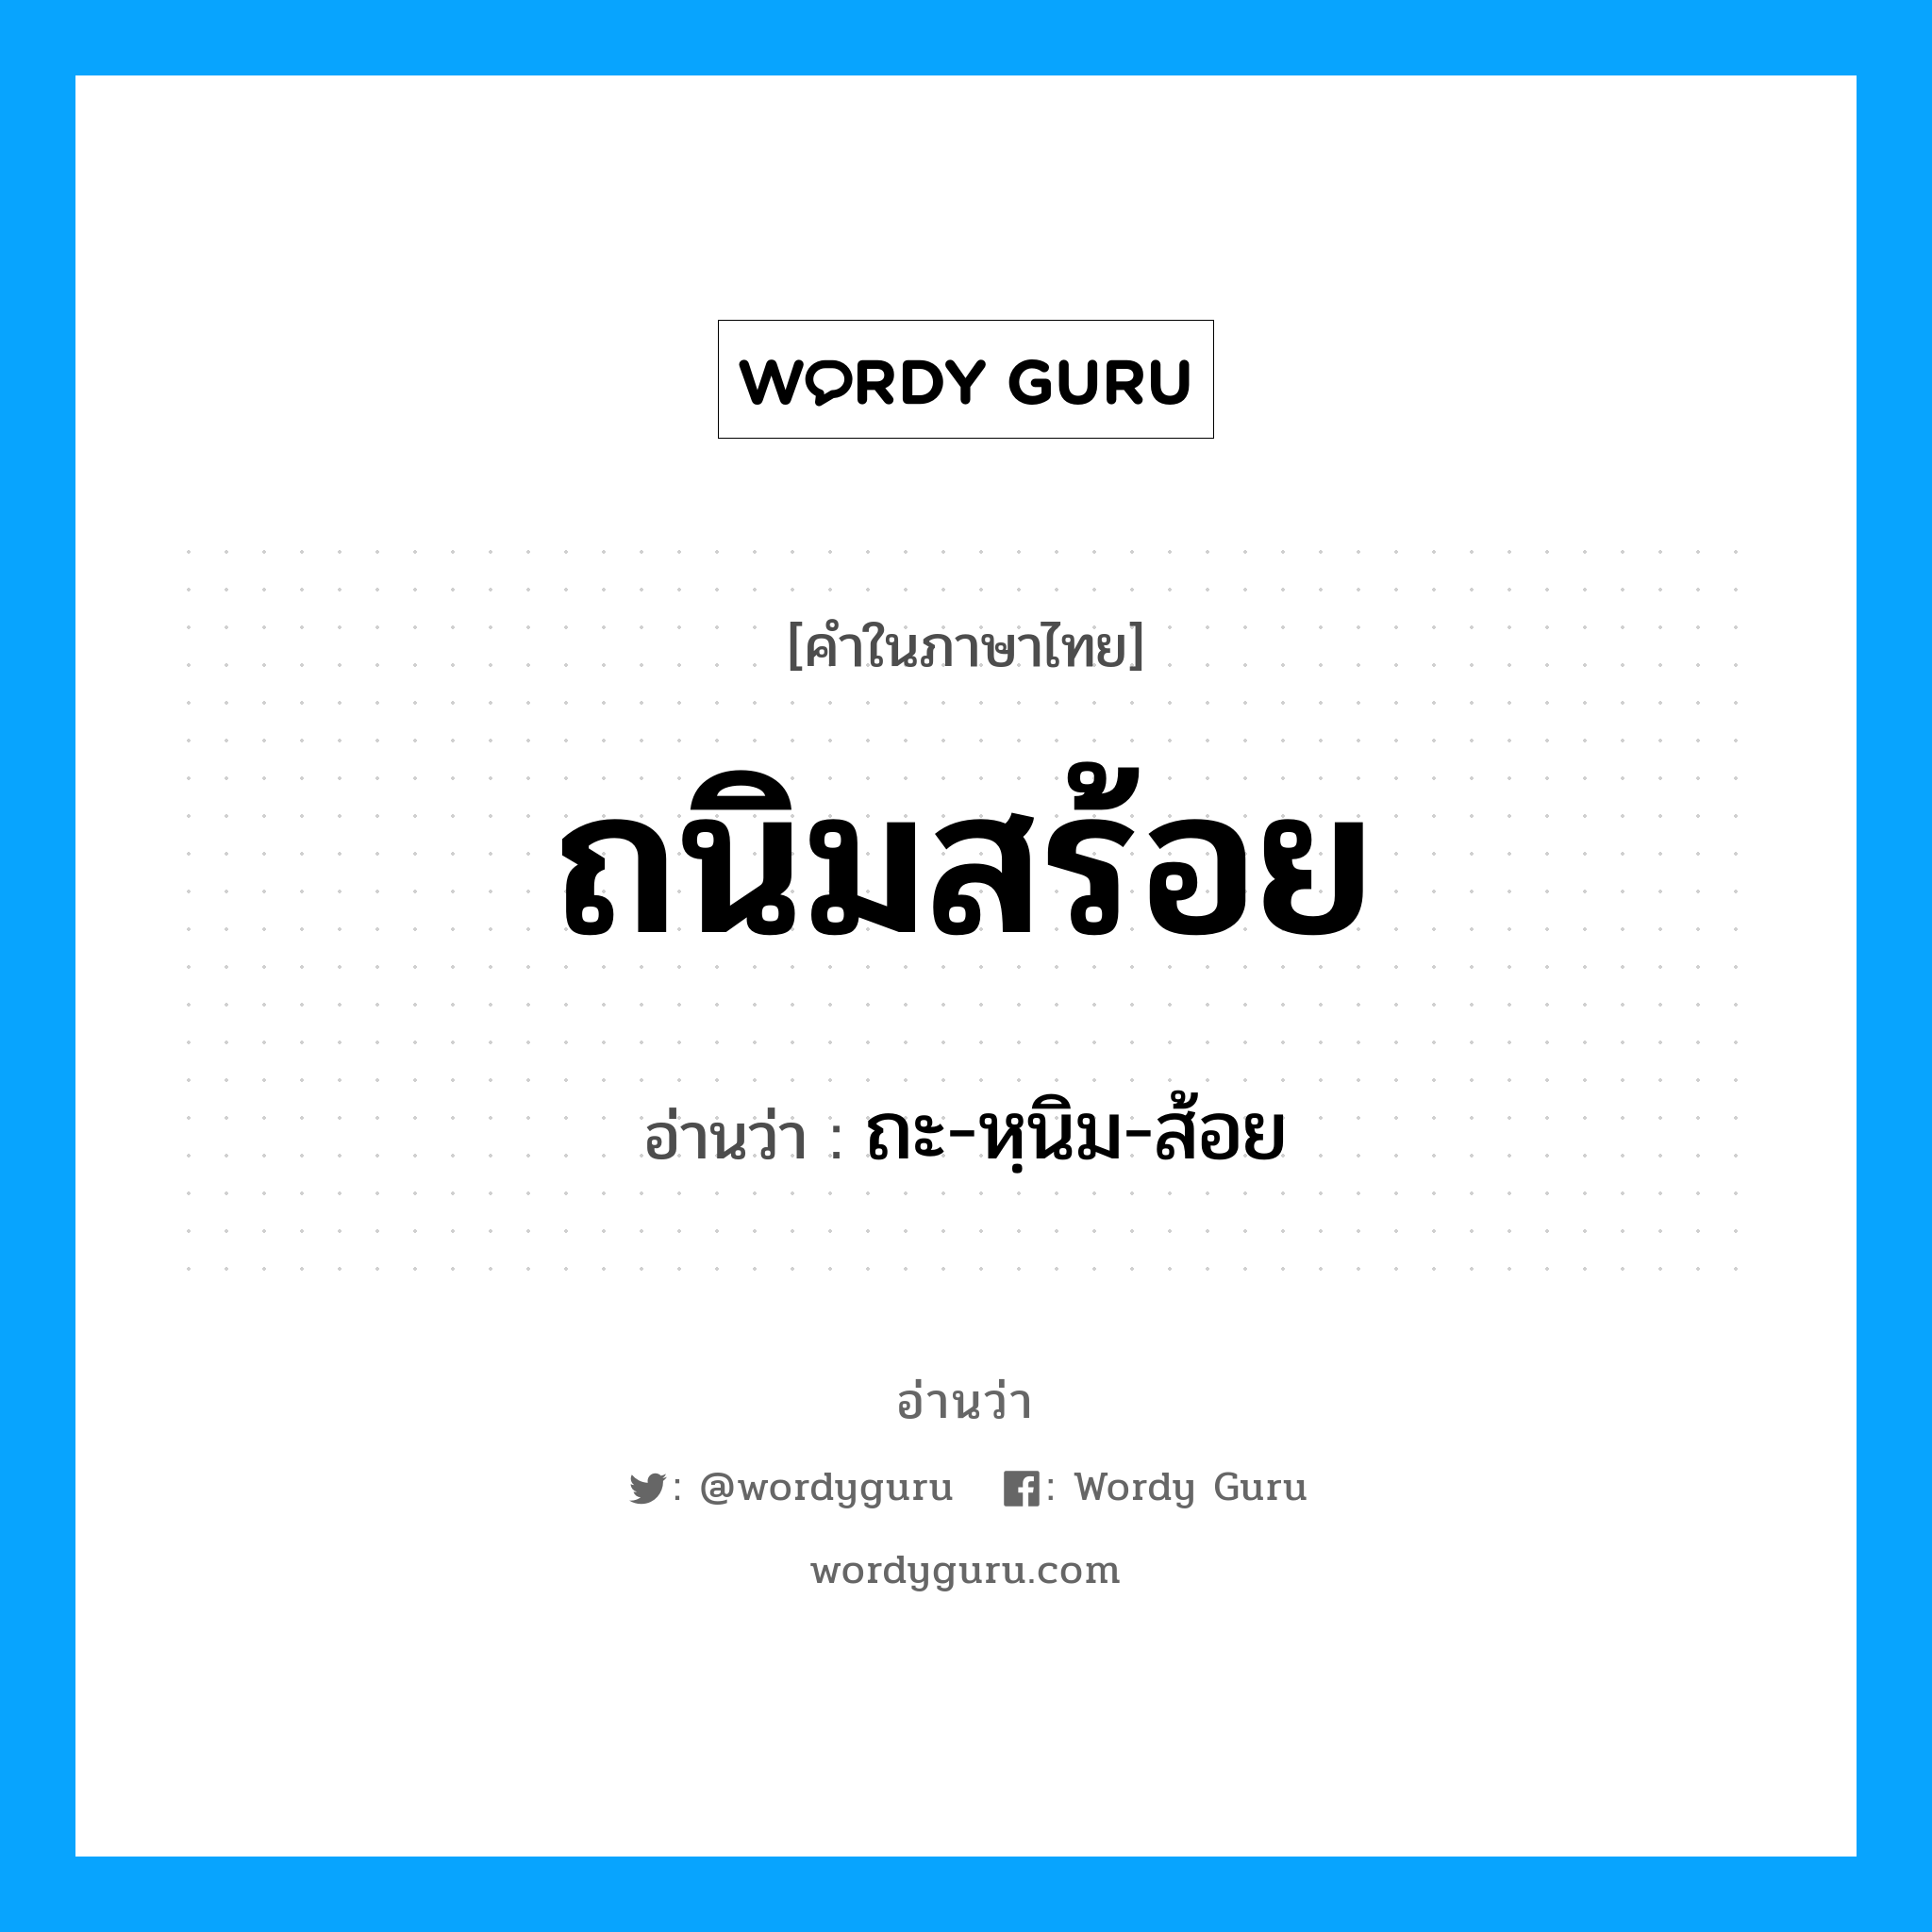 ถะ-หฺนิม-ส้อย เป็นคำอ่านของคำไหน?, คำในภาษาไทย ถะ-หฺนิม-ส้อย อ่านว่า ถนิมสร้อย